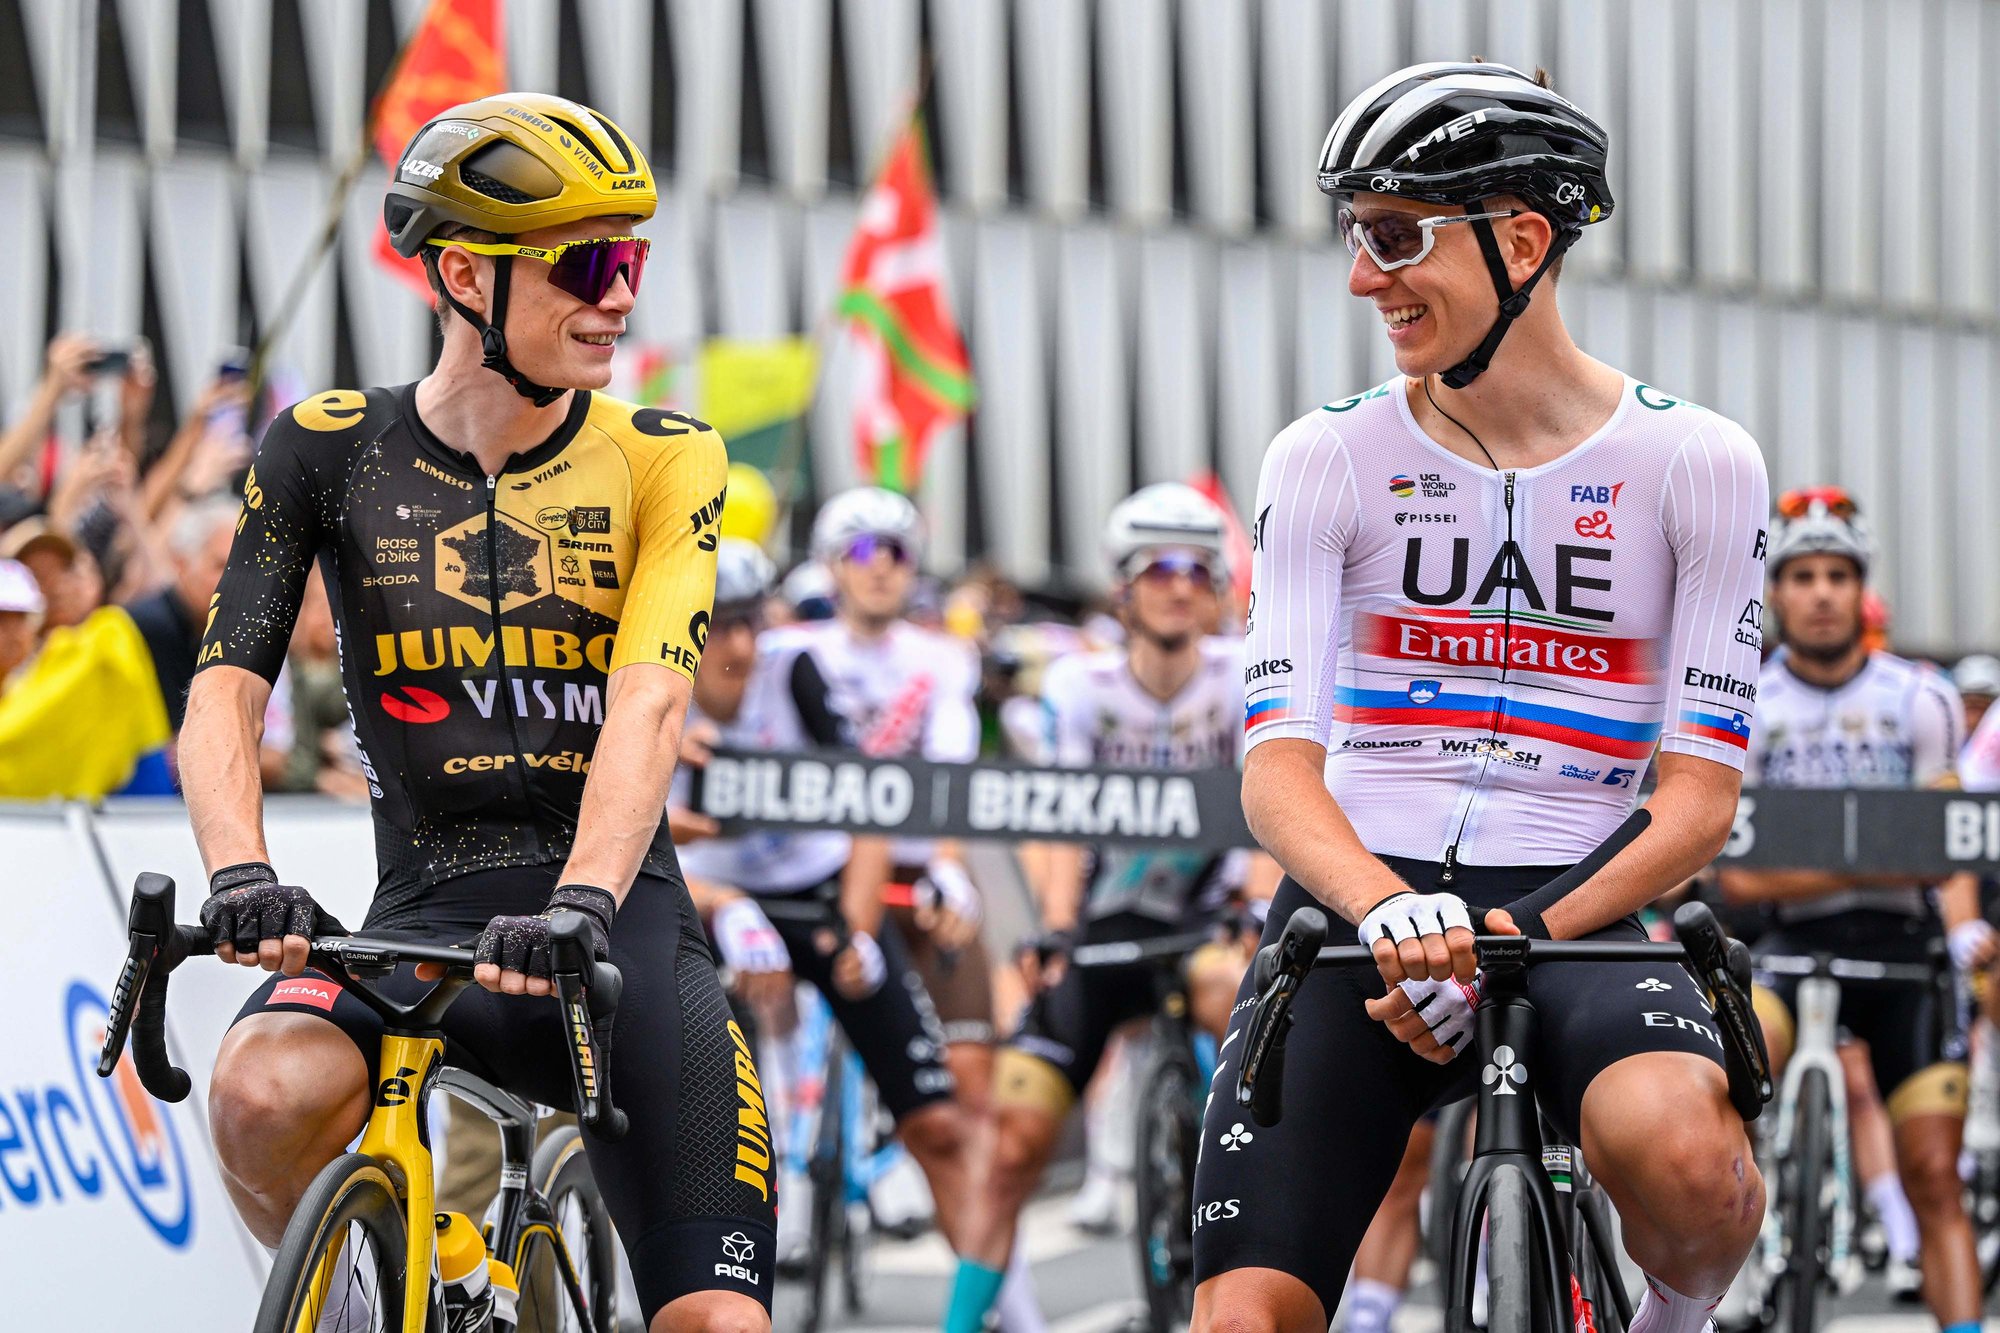 Jonas Vingegaard of Team Jumbo-Visma and Tadej Pogacar in Tour de France